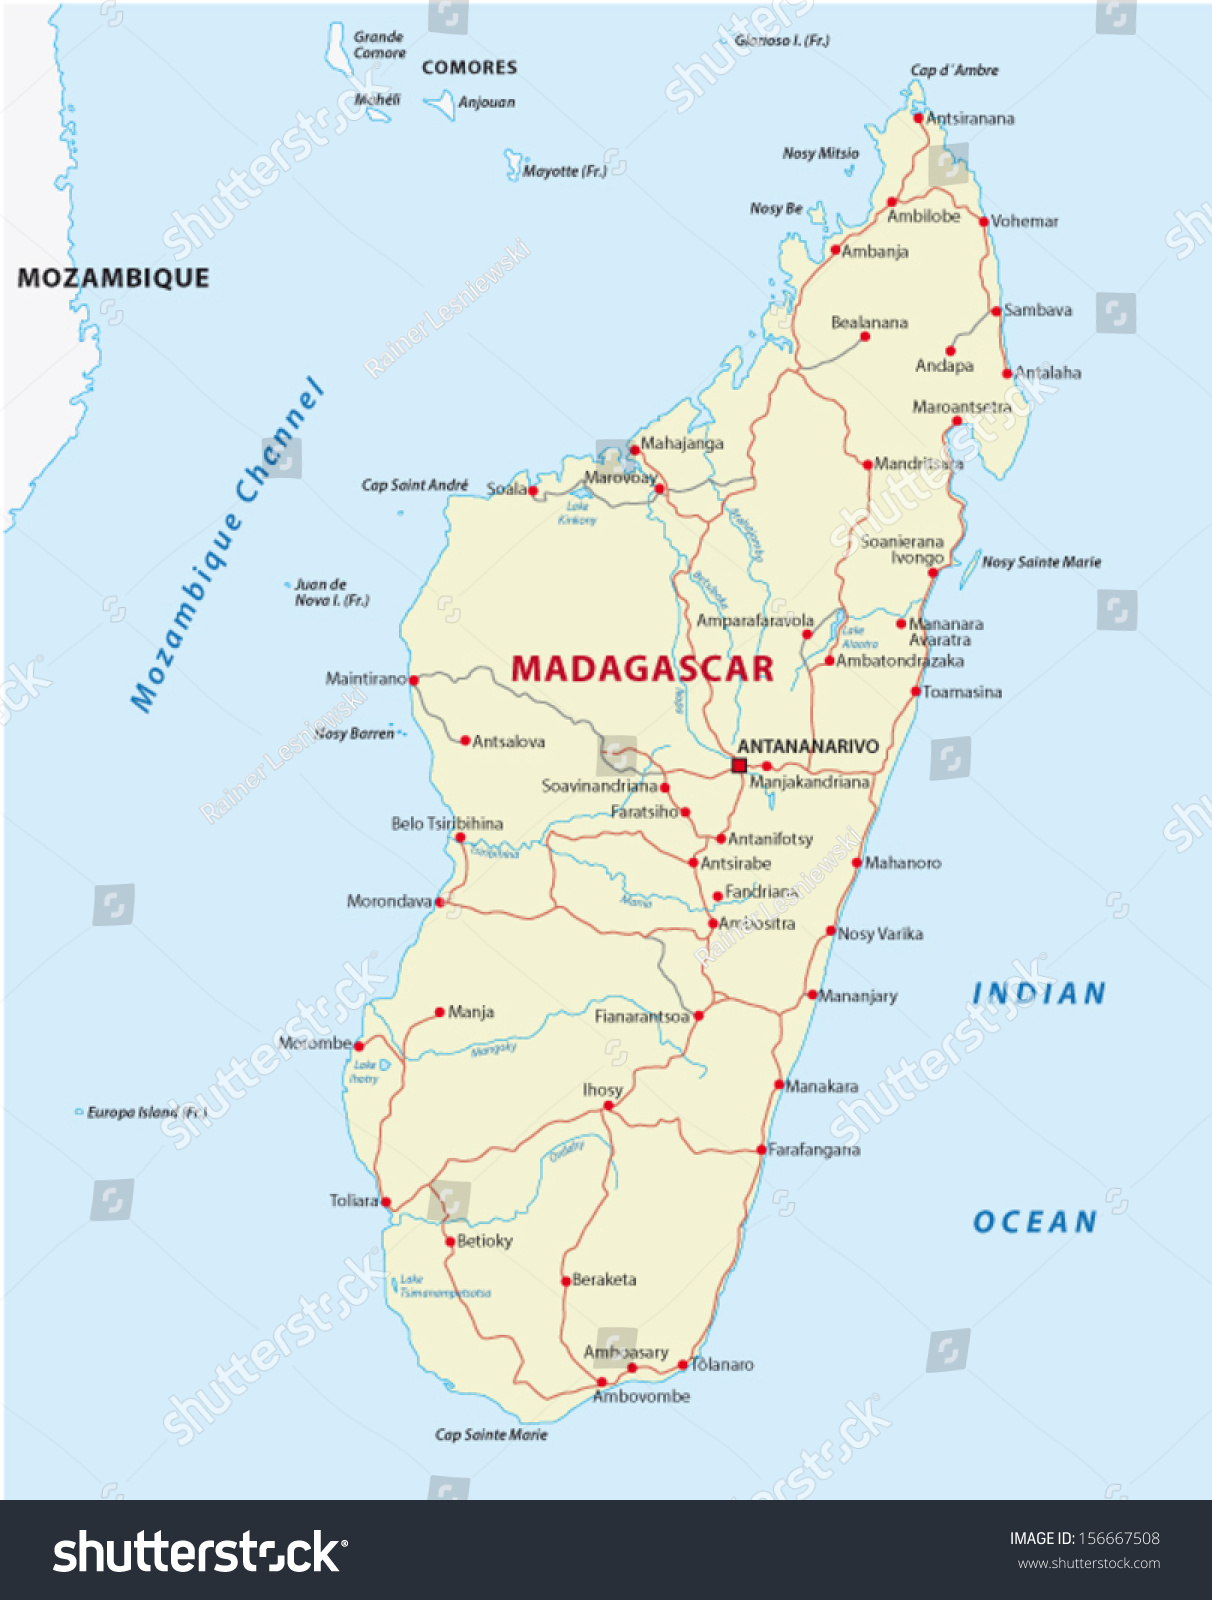 Madagascar Road Map Stock Vector Illustration 156667508 : Shutterstock